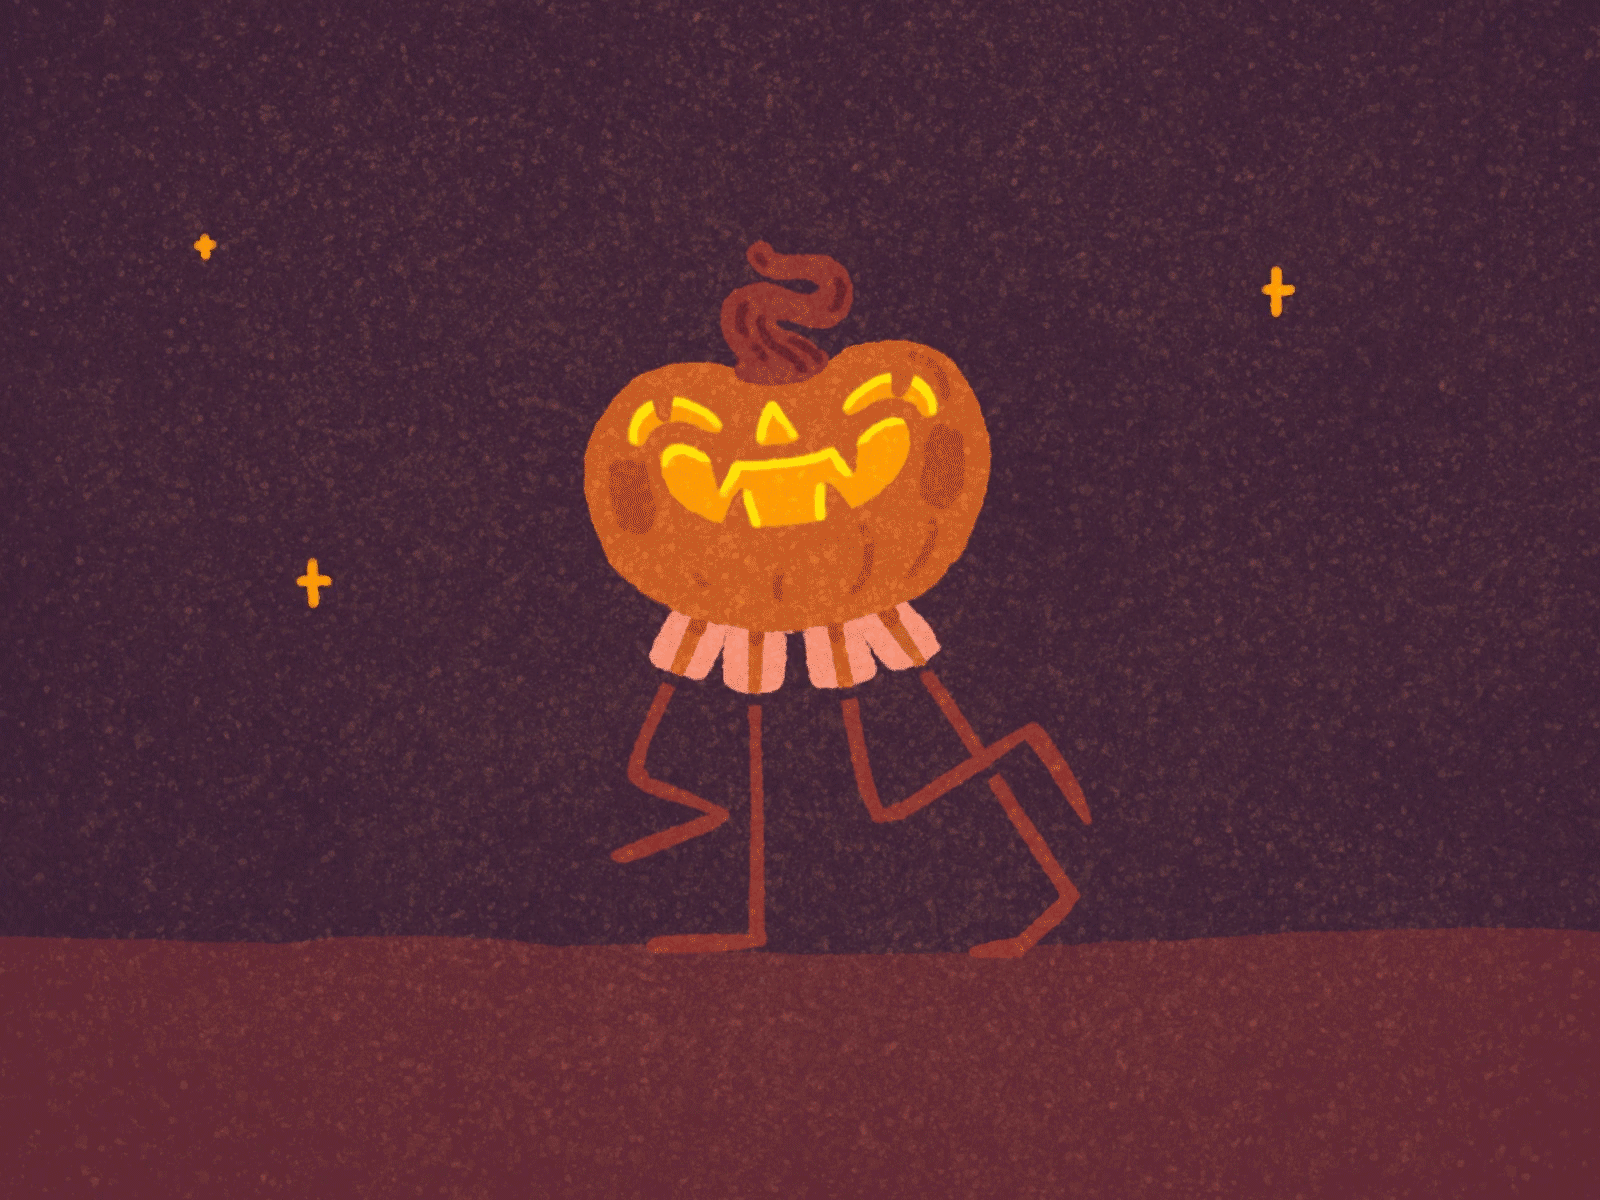 Pumpkin walk